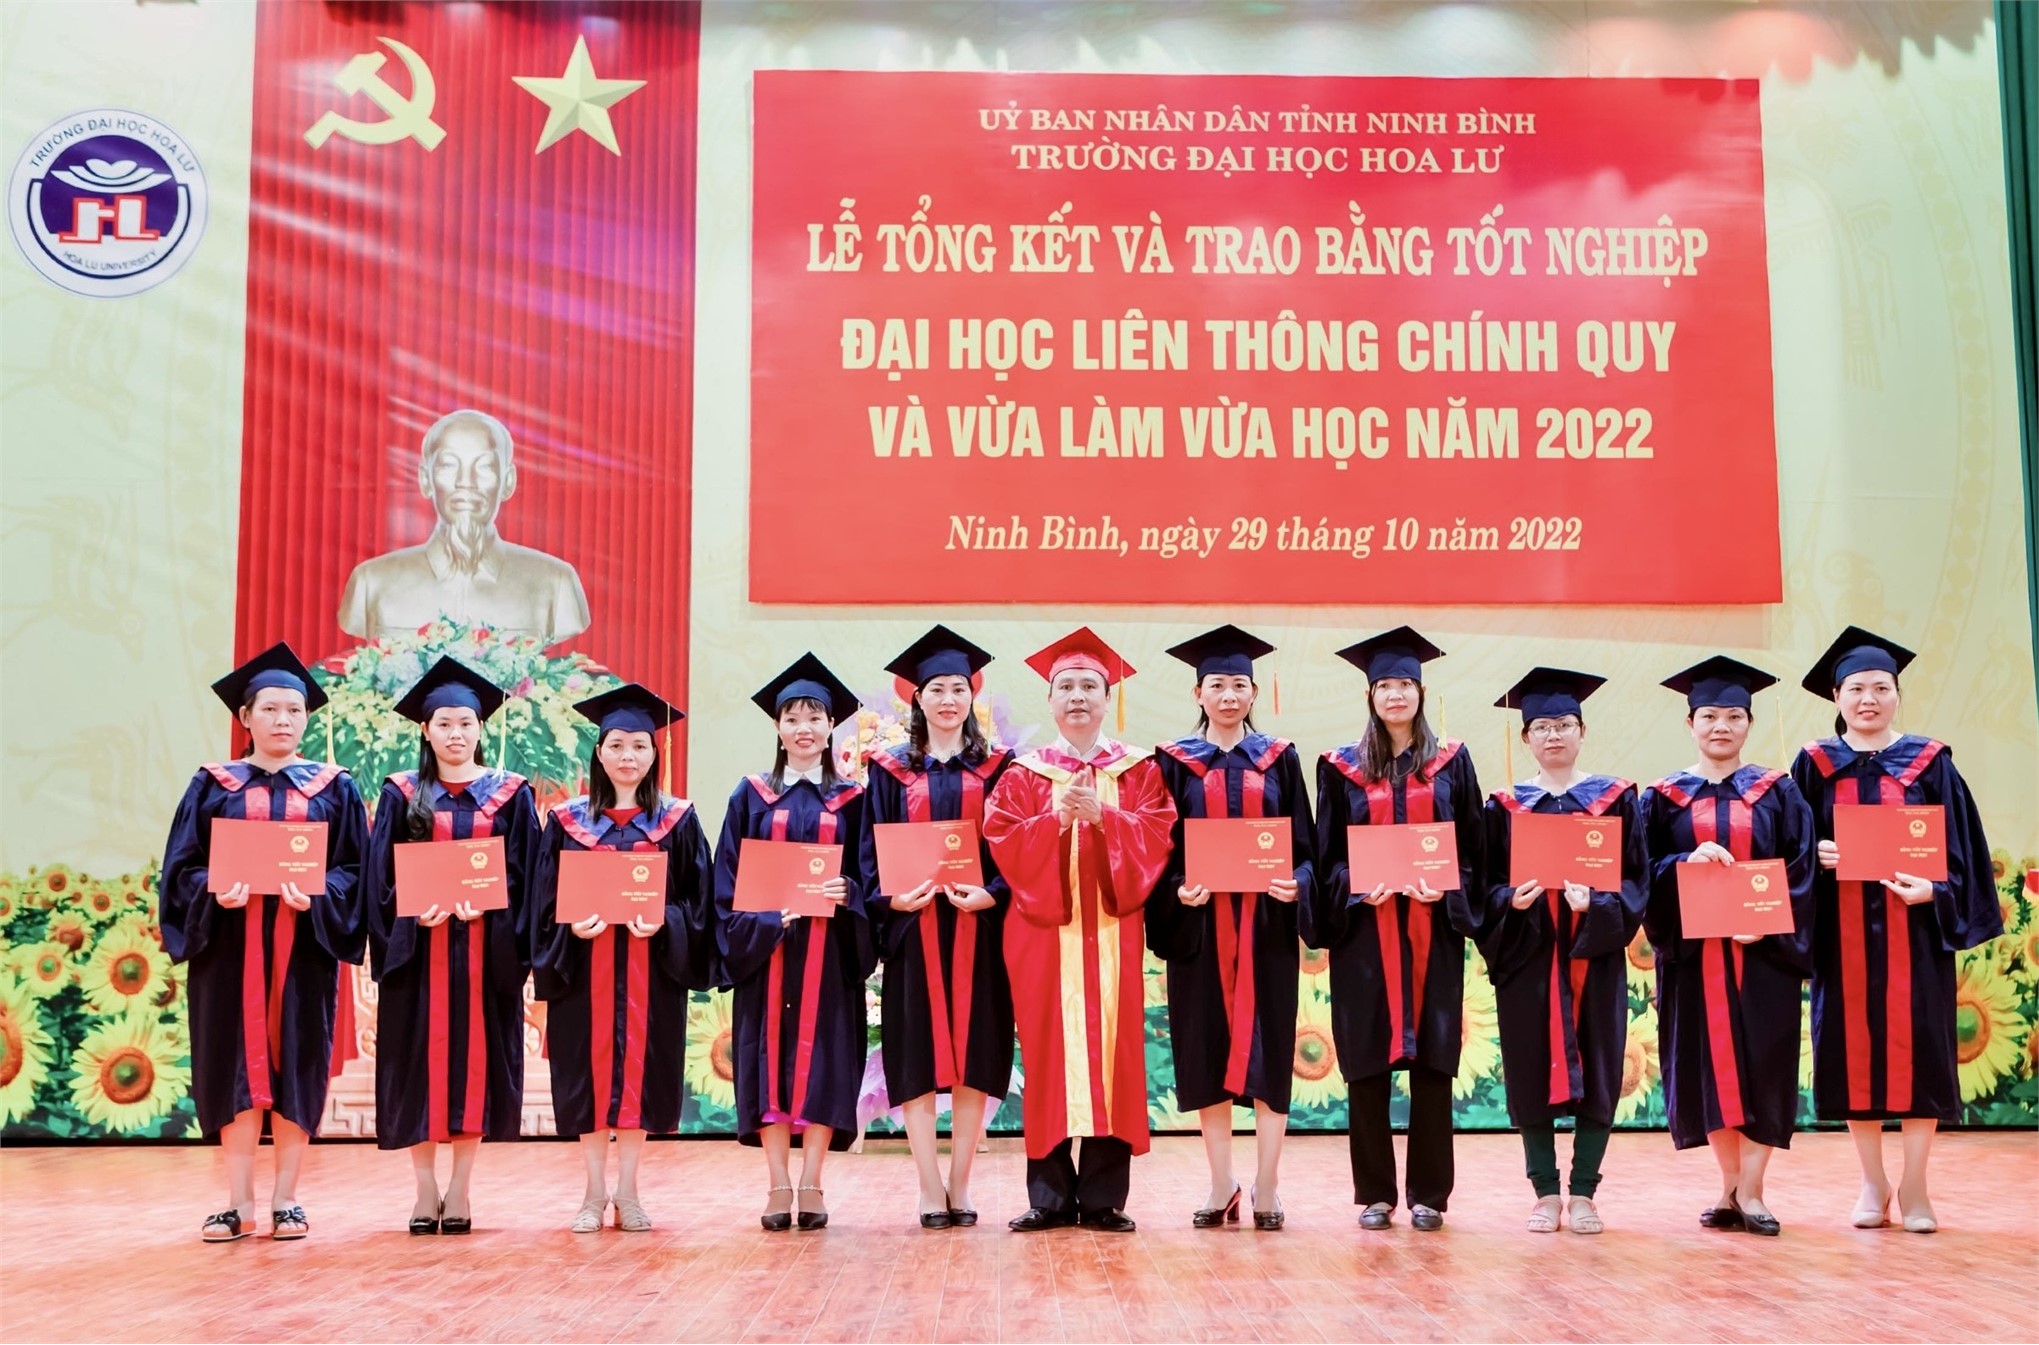 Lễ tổng kết và trao bằng tốt nghiệp đại học hệ liên thông chính quy và liên thông VLVH năm 2022